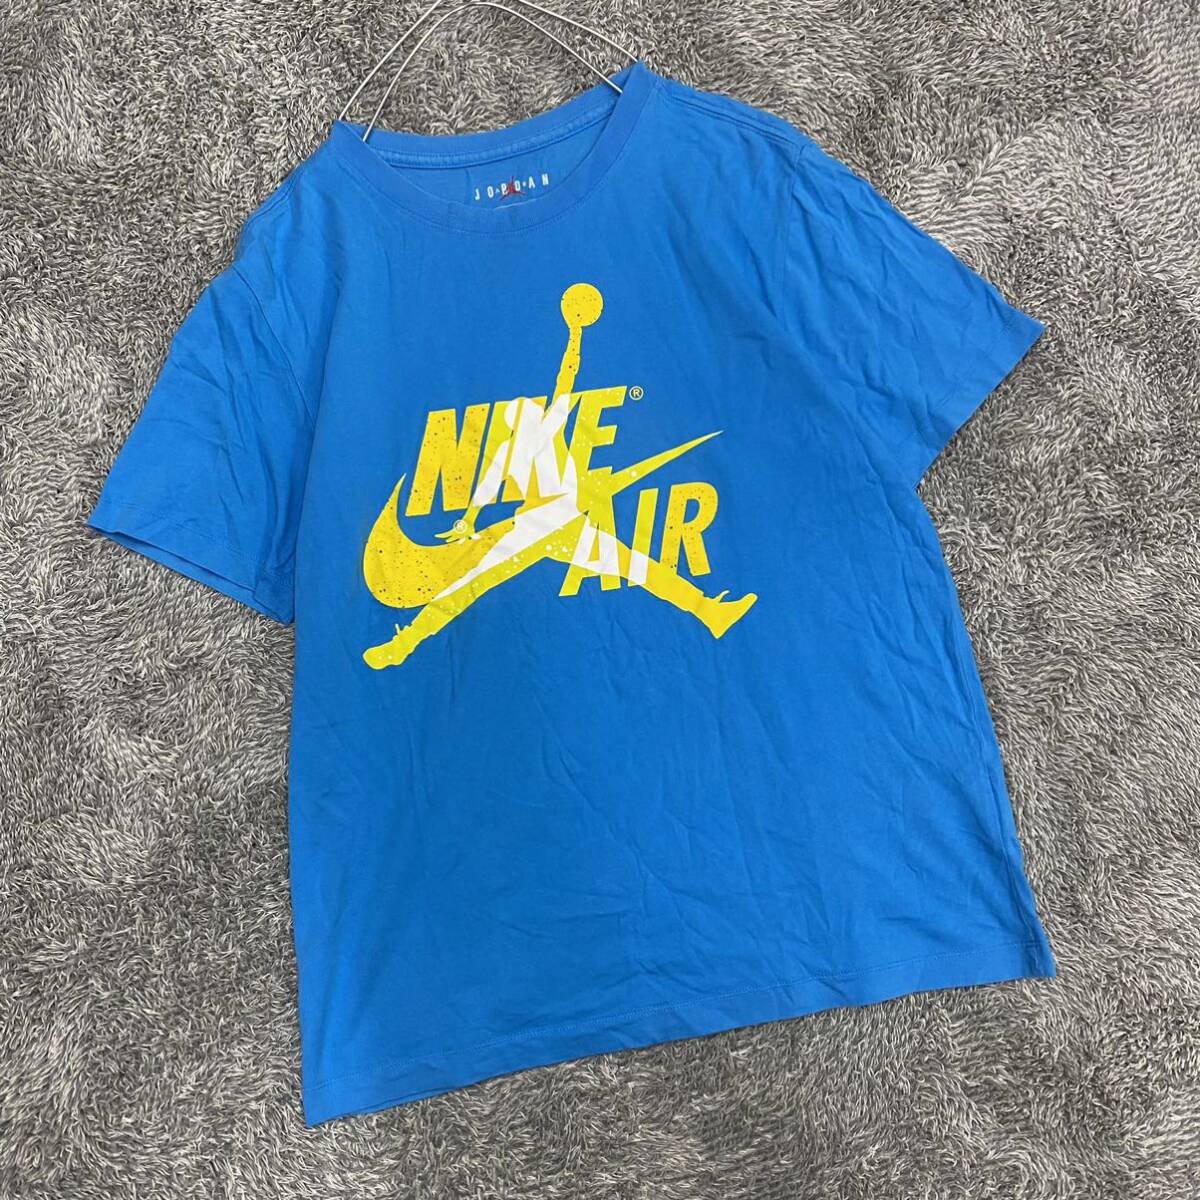 NIKE ナイキ JORDAN ジョーダン Tシャツ 半袖カットソー サイズL ブルー 青 メンズ トップス 最落なし （U18）の画像1